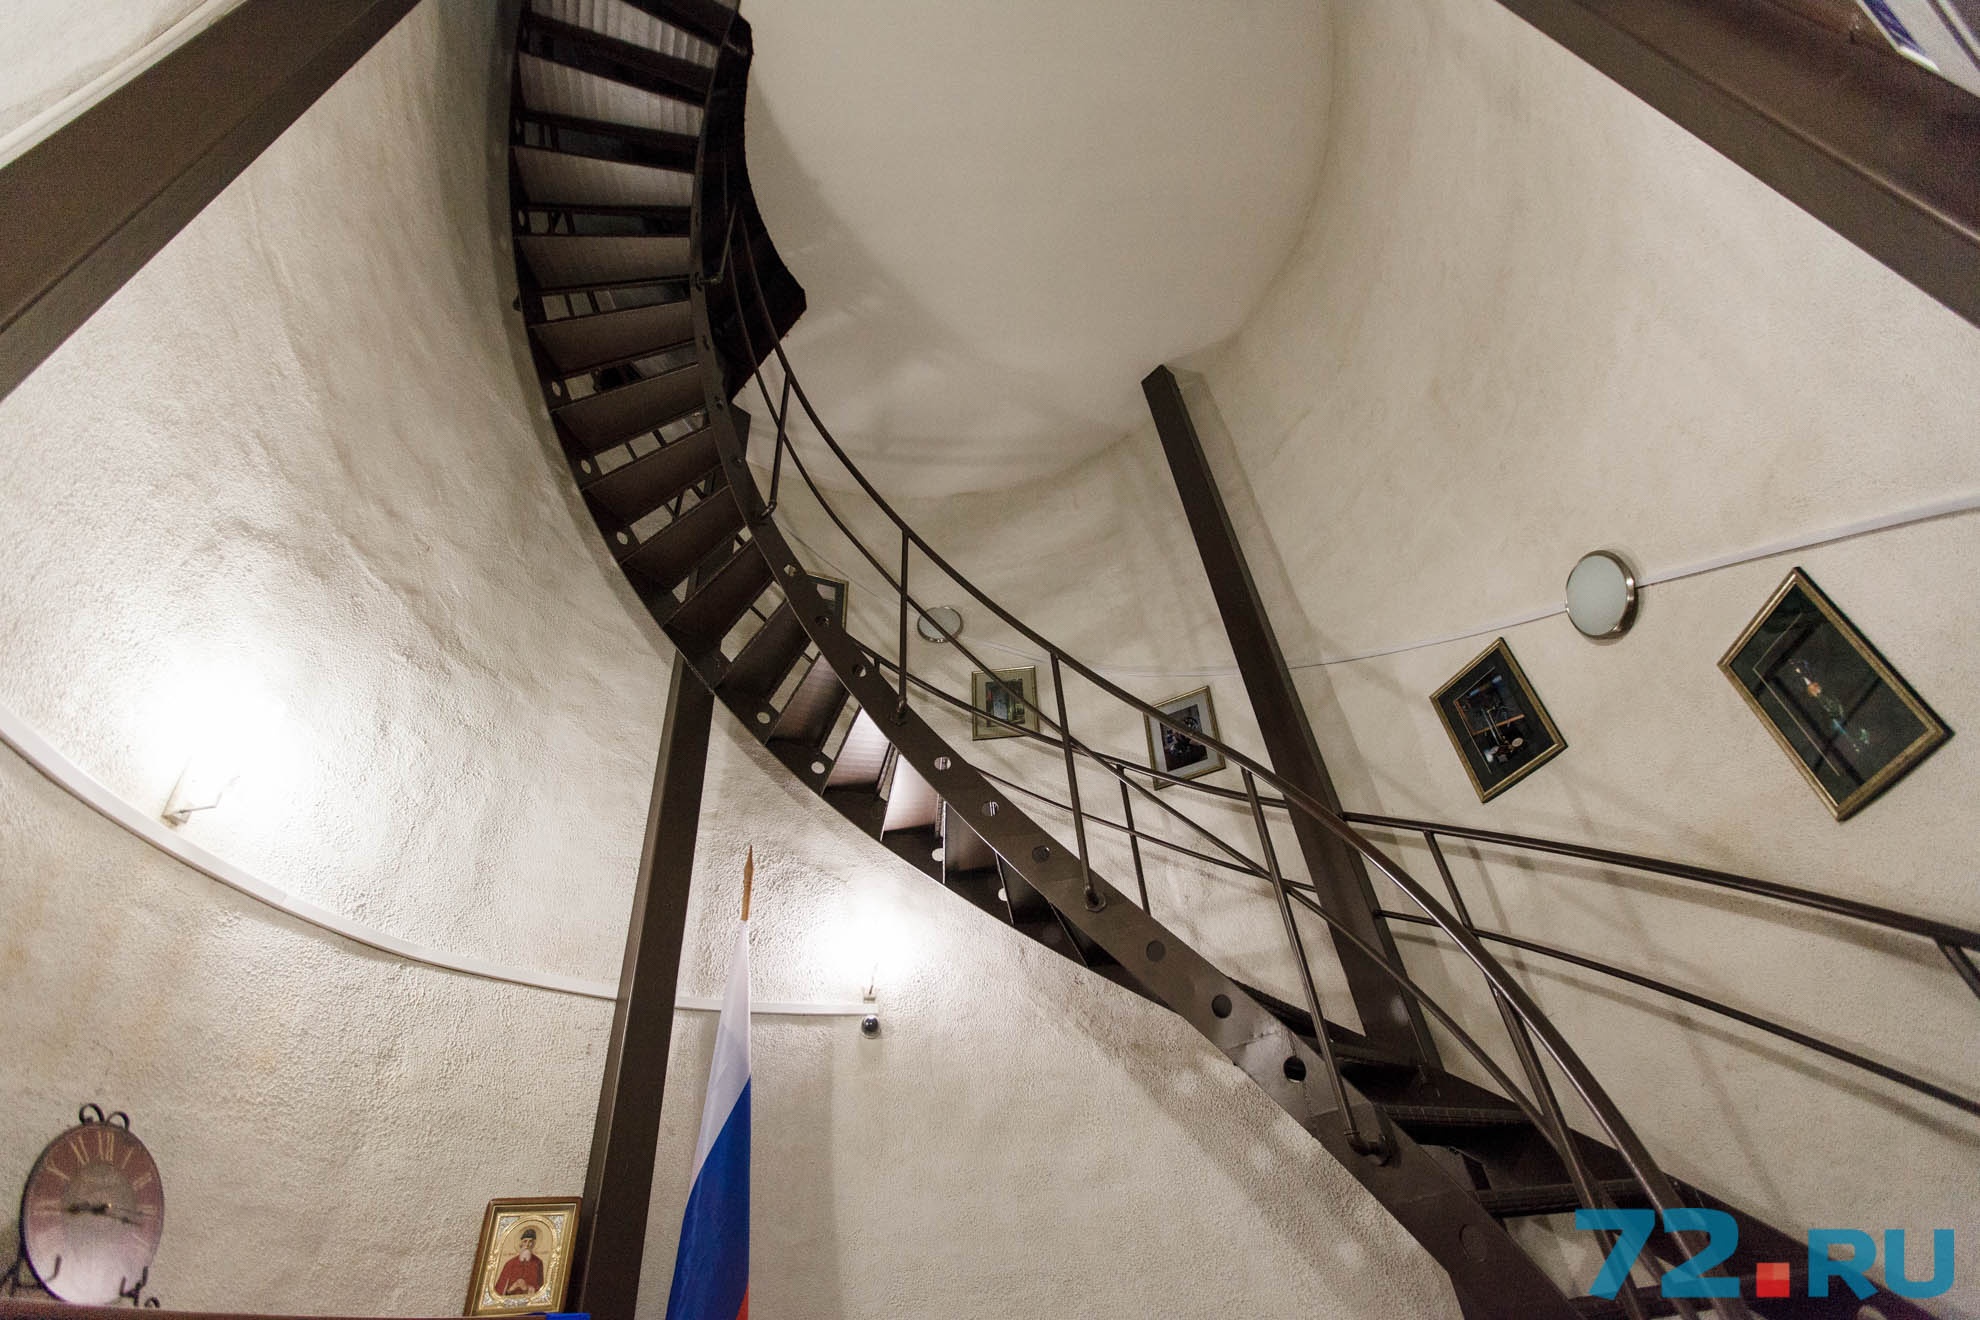 Чтобы добраться до телескопа, придется идти наверх по этой лестнице. Это все равно, что подняться на 8 этаж